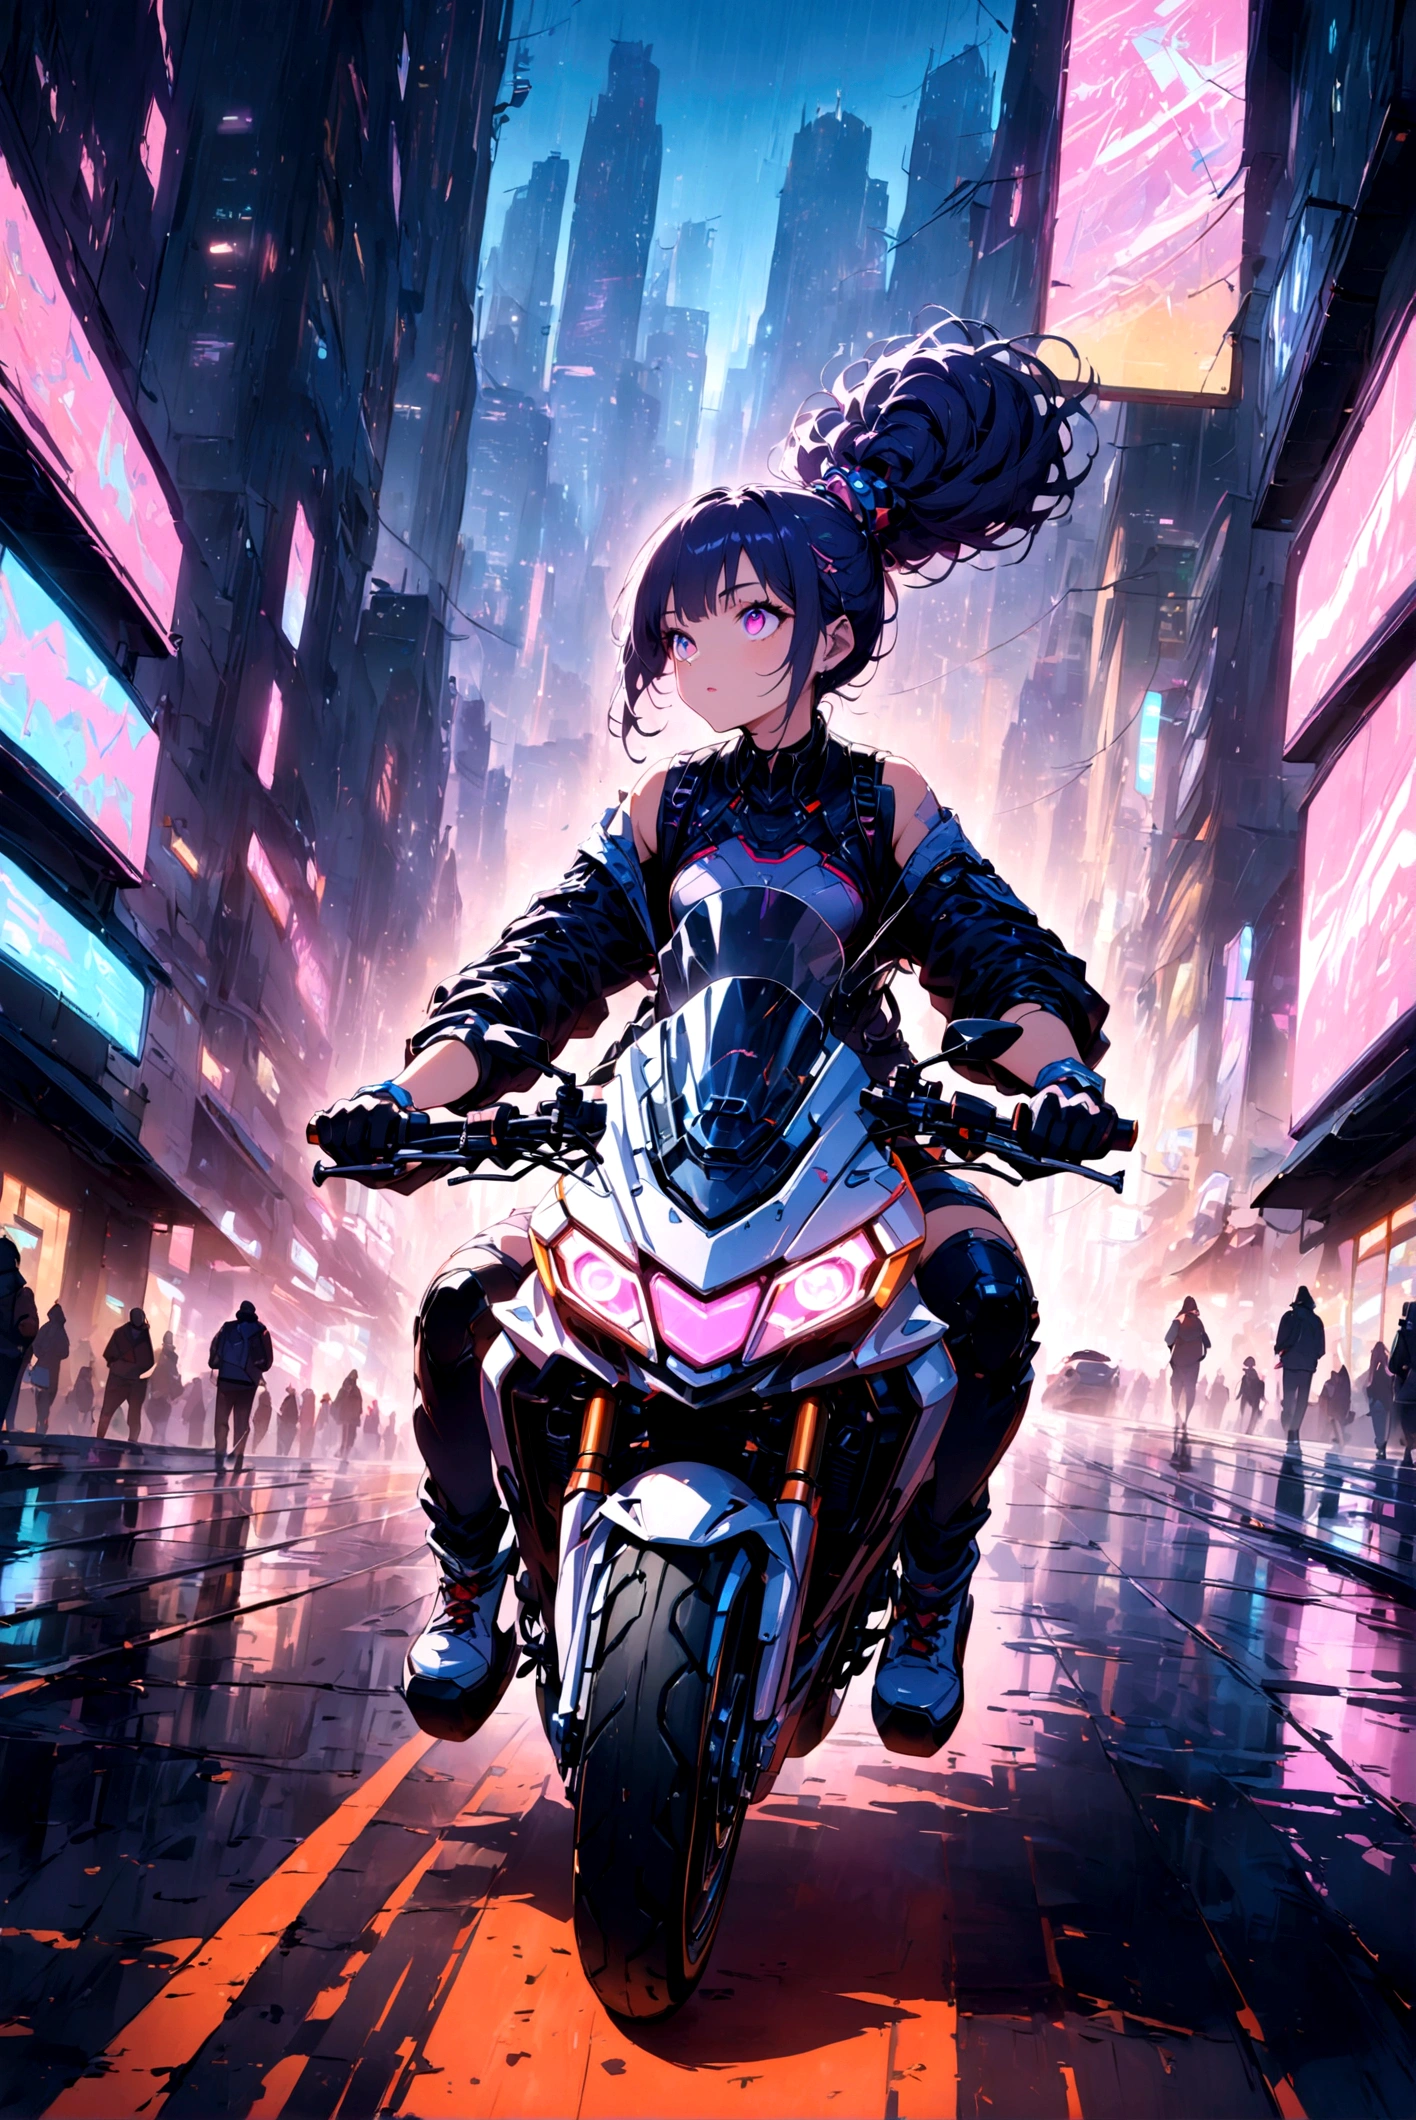 (((抬頭看)))，1 名女孩，(((駕駛大型摩托車穿越城市)))，大笑， - 未來城市景觀，深夜，賽博朋克，氖， - 賽博朋克 aesthetic - 氖 lights - Nighttime setting - Detailed and vibrant 插圖 - High-tech environment - Woman in futuristic outfit - Motorcycle - Dynamic pose - Urban street 最佳画质，最大分辨率，傑作，疯狂的细节， 最好的品質, 傑作, 插圖, 超詳細, 美麗細緻的眼睛, ,